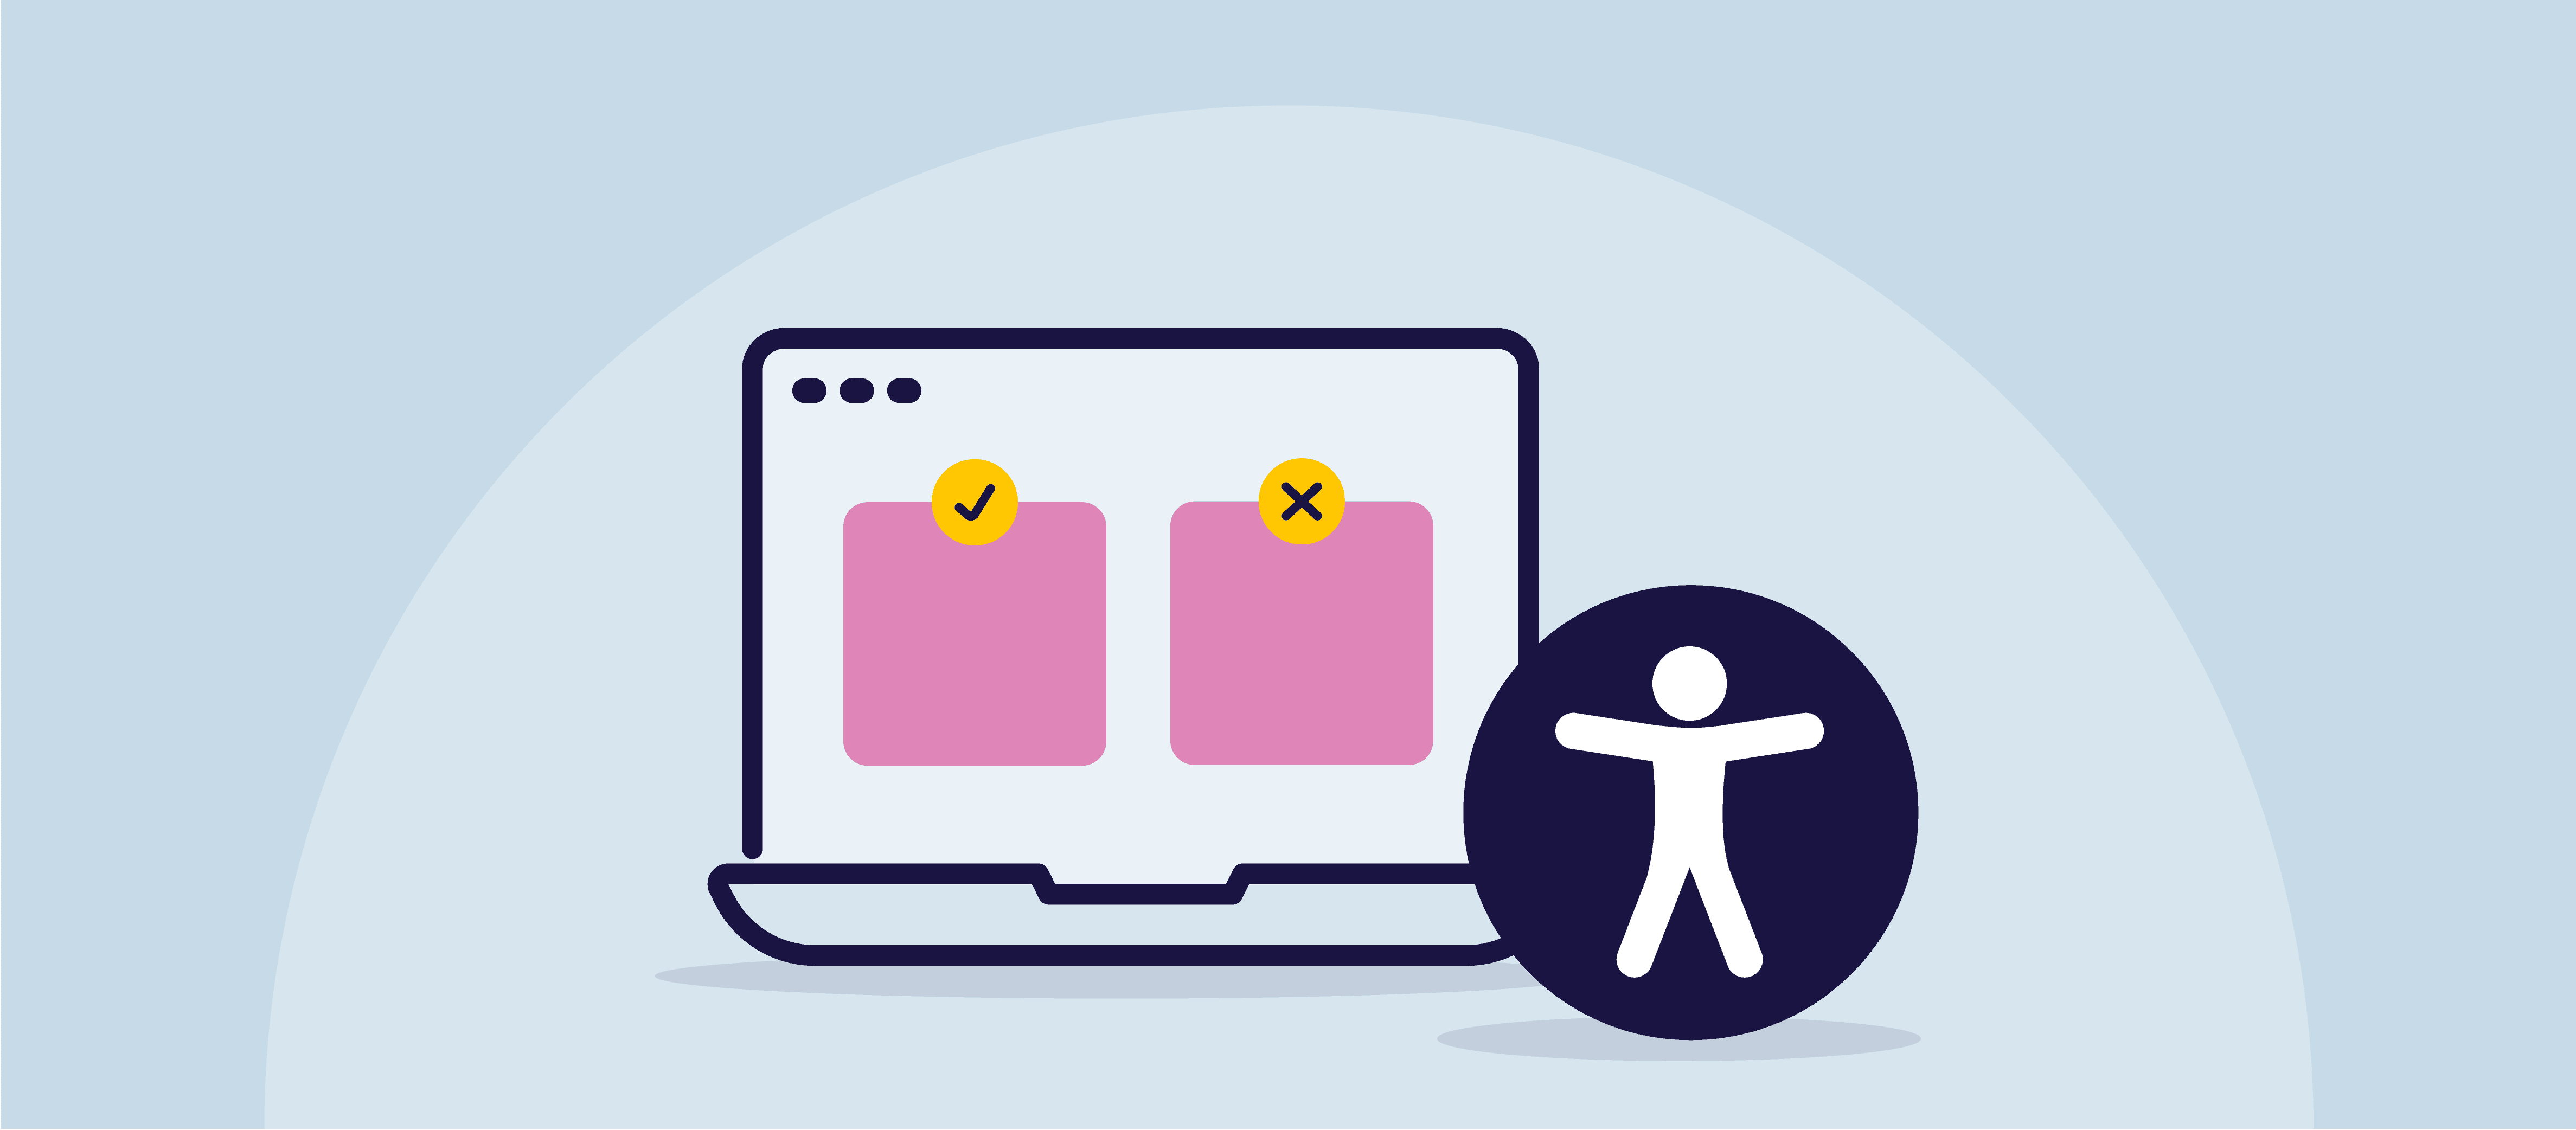 Illustration d'un écran d'ordinateur avec deux carrés roses sur l'écran représentant des mèmes. L'un d'eux est surmonté d'une coche et l'autre d'un X. À droite de l'écran se trouve le symbole d'accessibilité universelle.